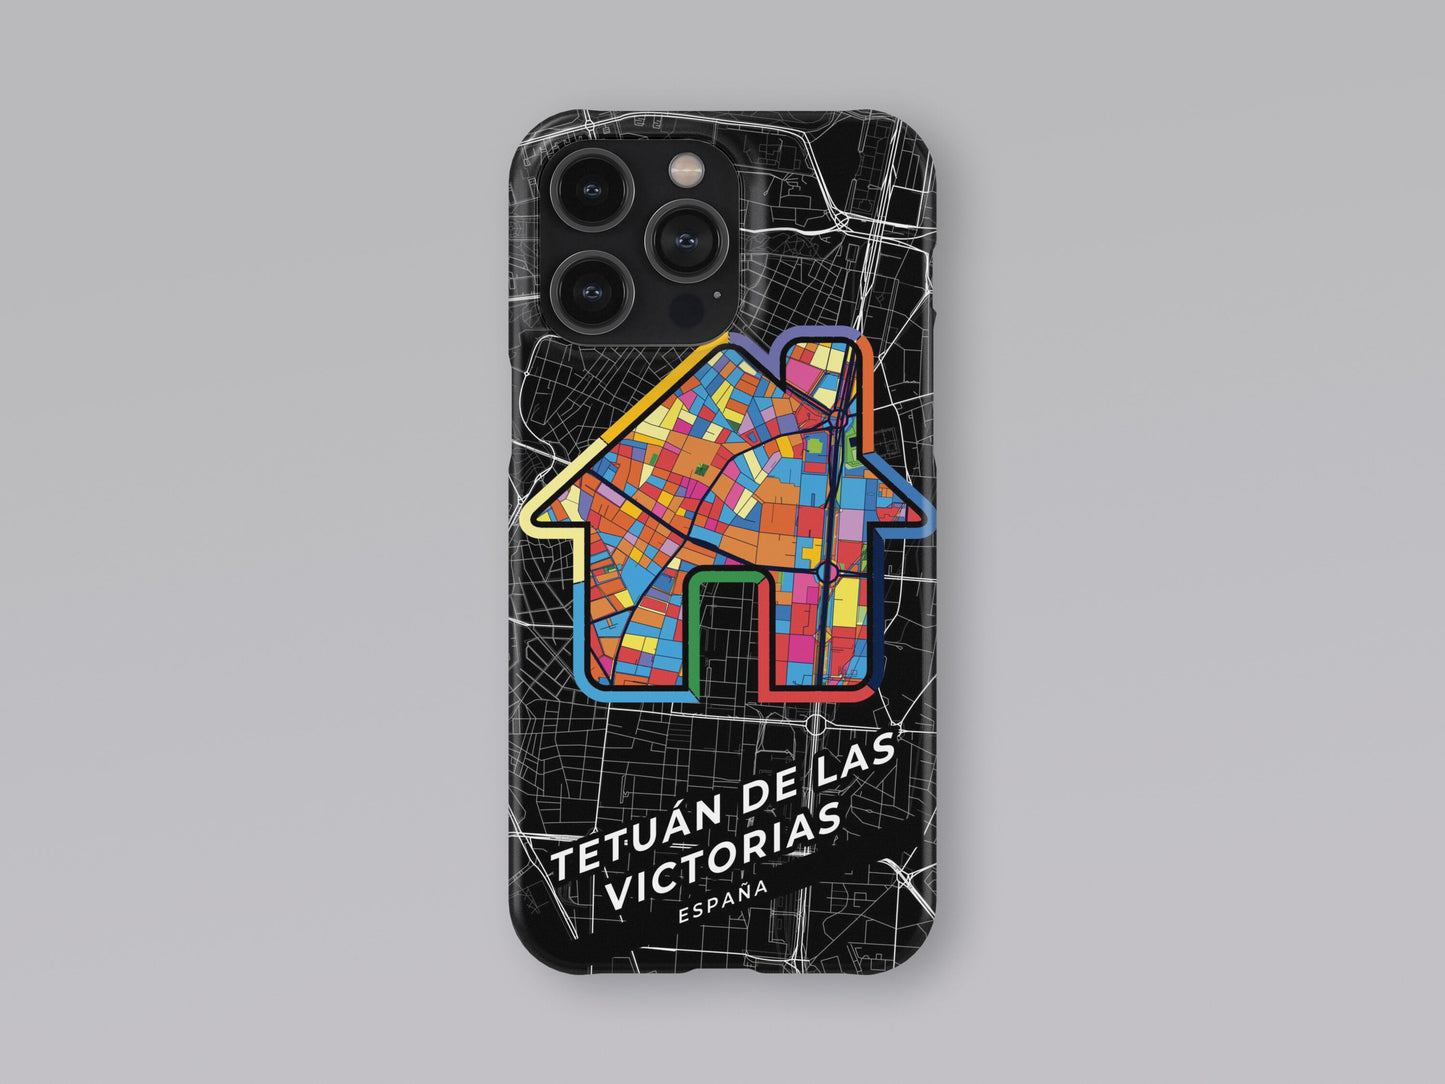 Tetuán De Las Victorias Spain slim phone case with colorful icon 3